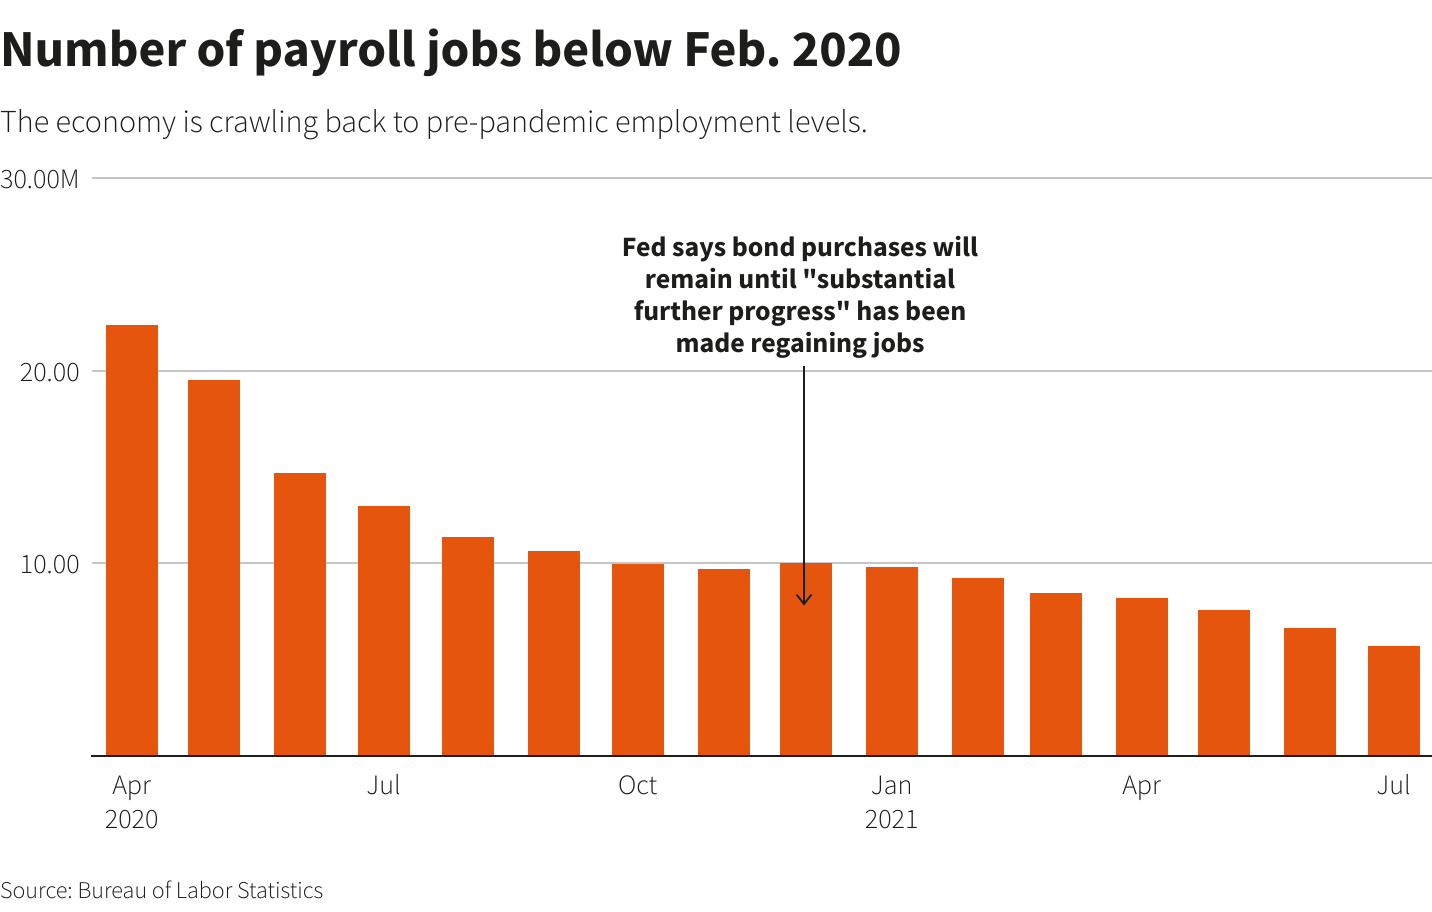 Number of payroll jobs below Feb. 2020